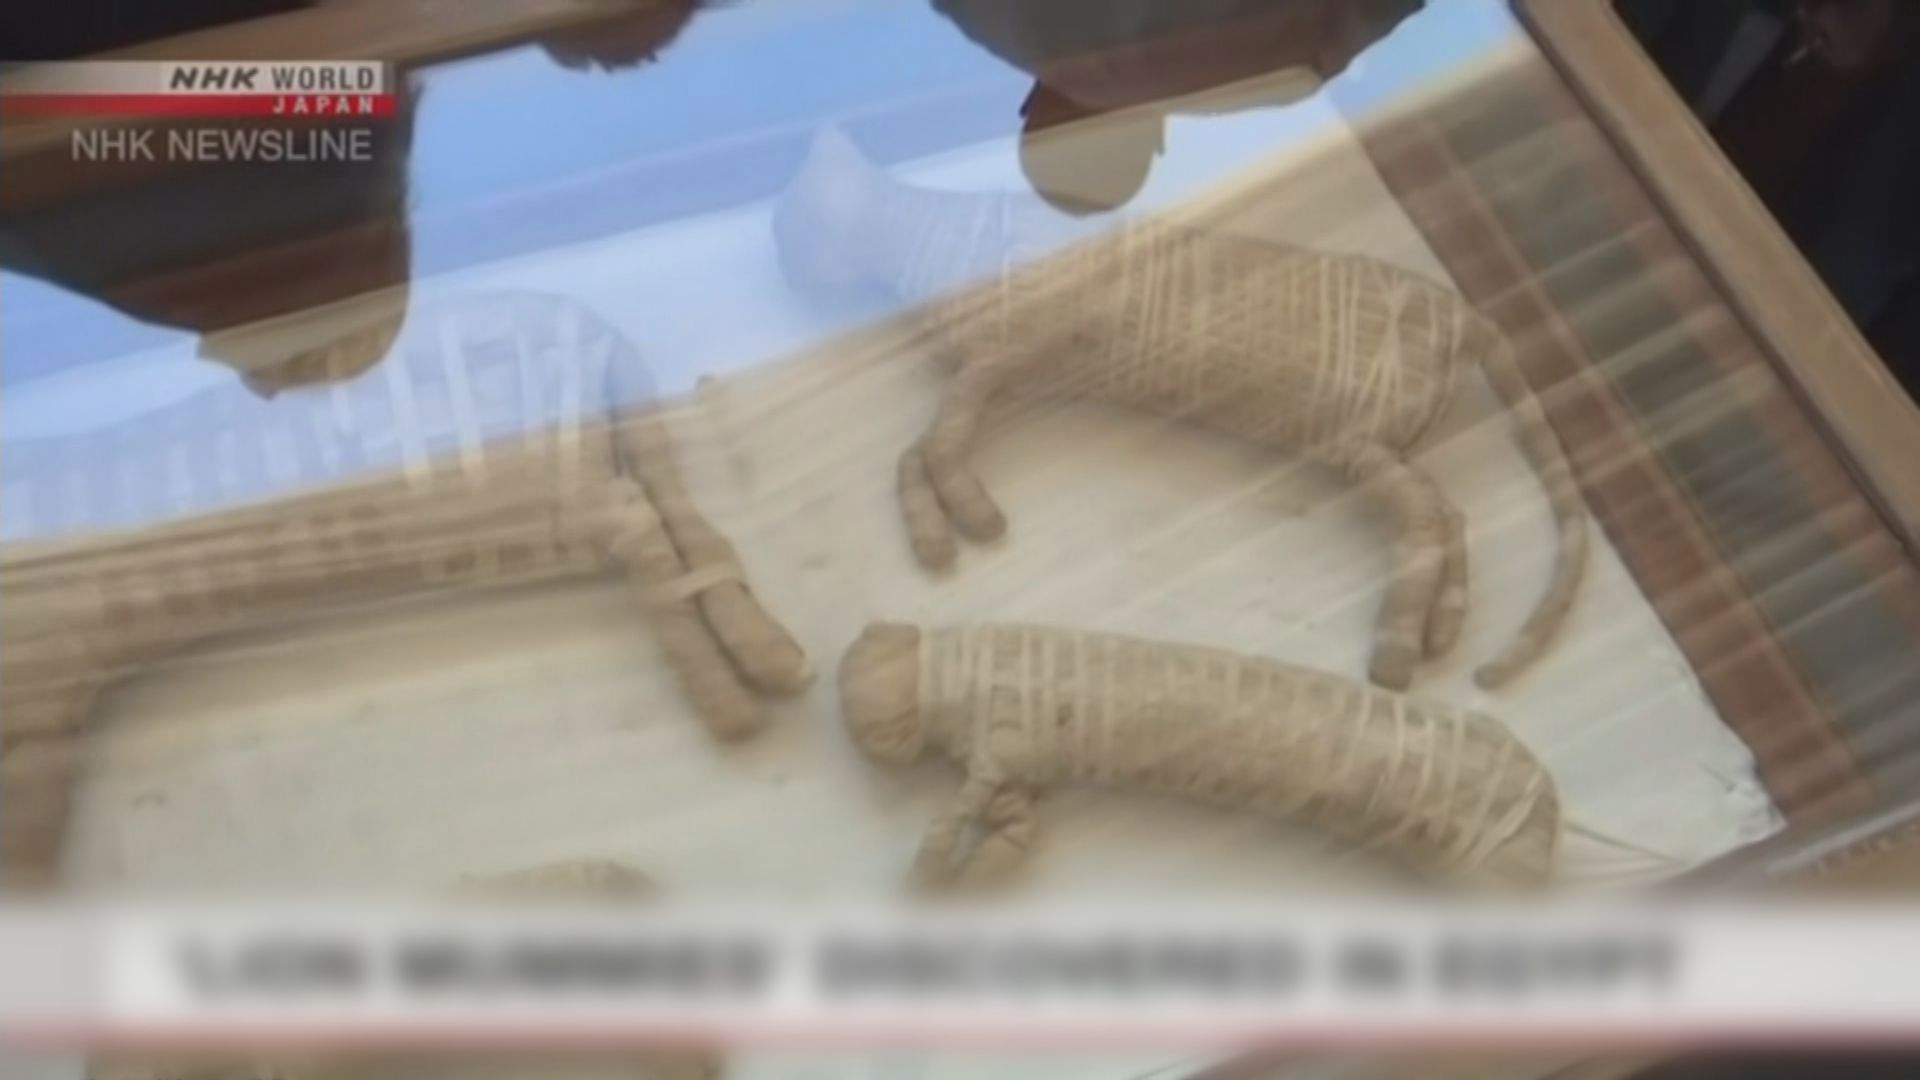 【環球薈報】埃及出土2600年前文物首次發現幼獅木乃伊